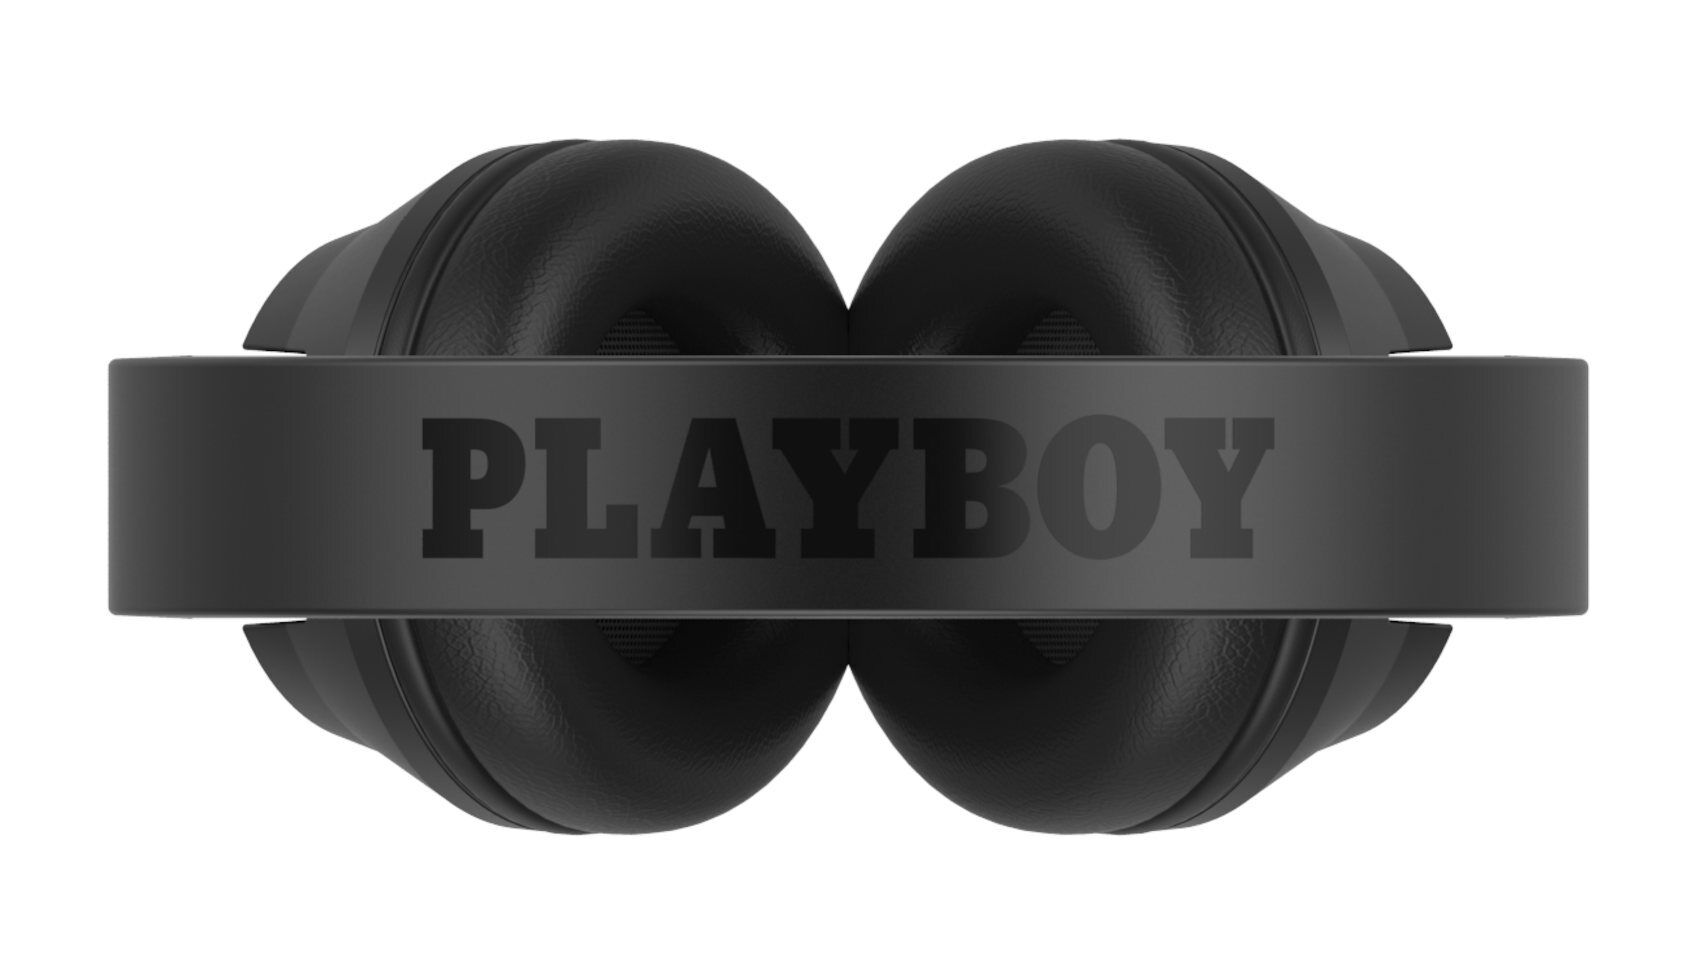 Playboy (да, тот Playboy) запускает свои первые беспроводные наушники